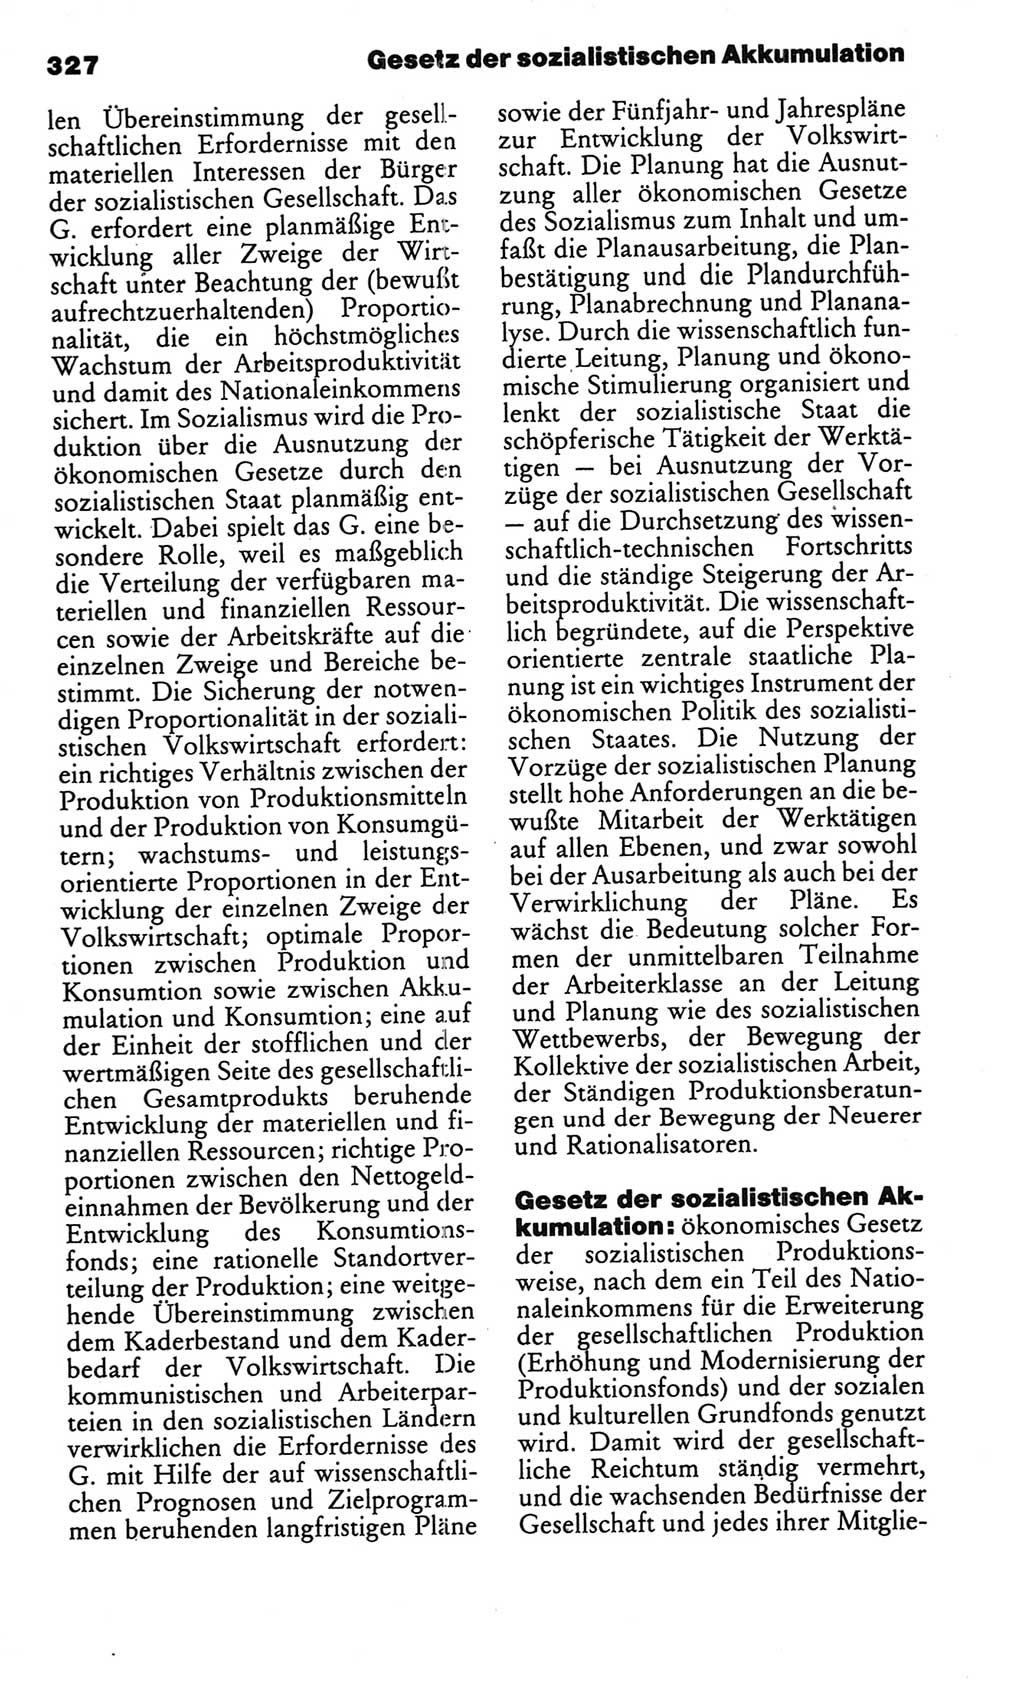 Kleines politisches Wörterbuch [Deutsche Demokratische Republik (DDR)] 1986, Seite 327 (Kl. pol. Wb. DDR 1986, S. 327)